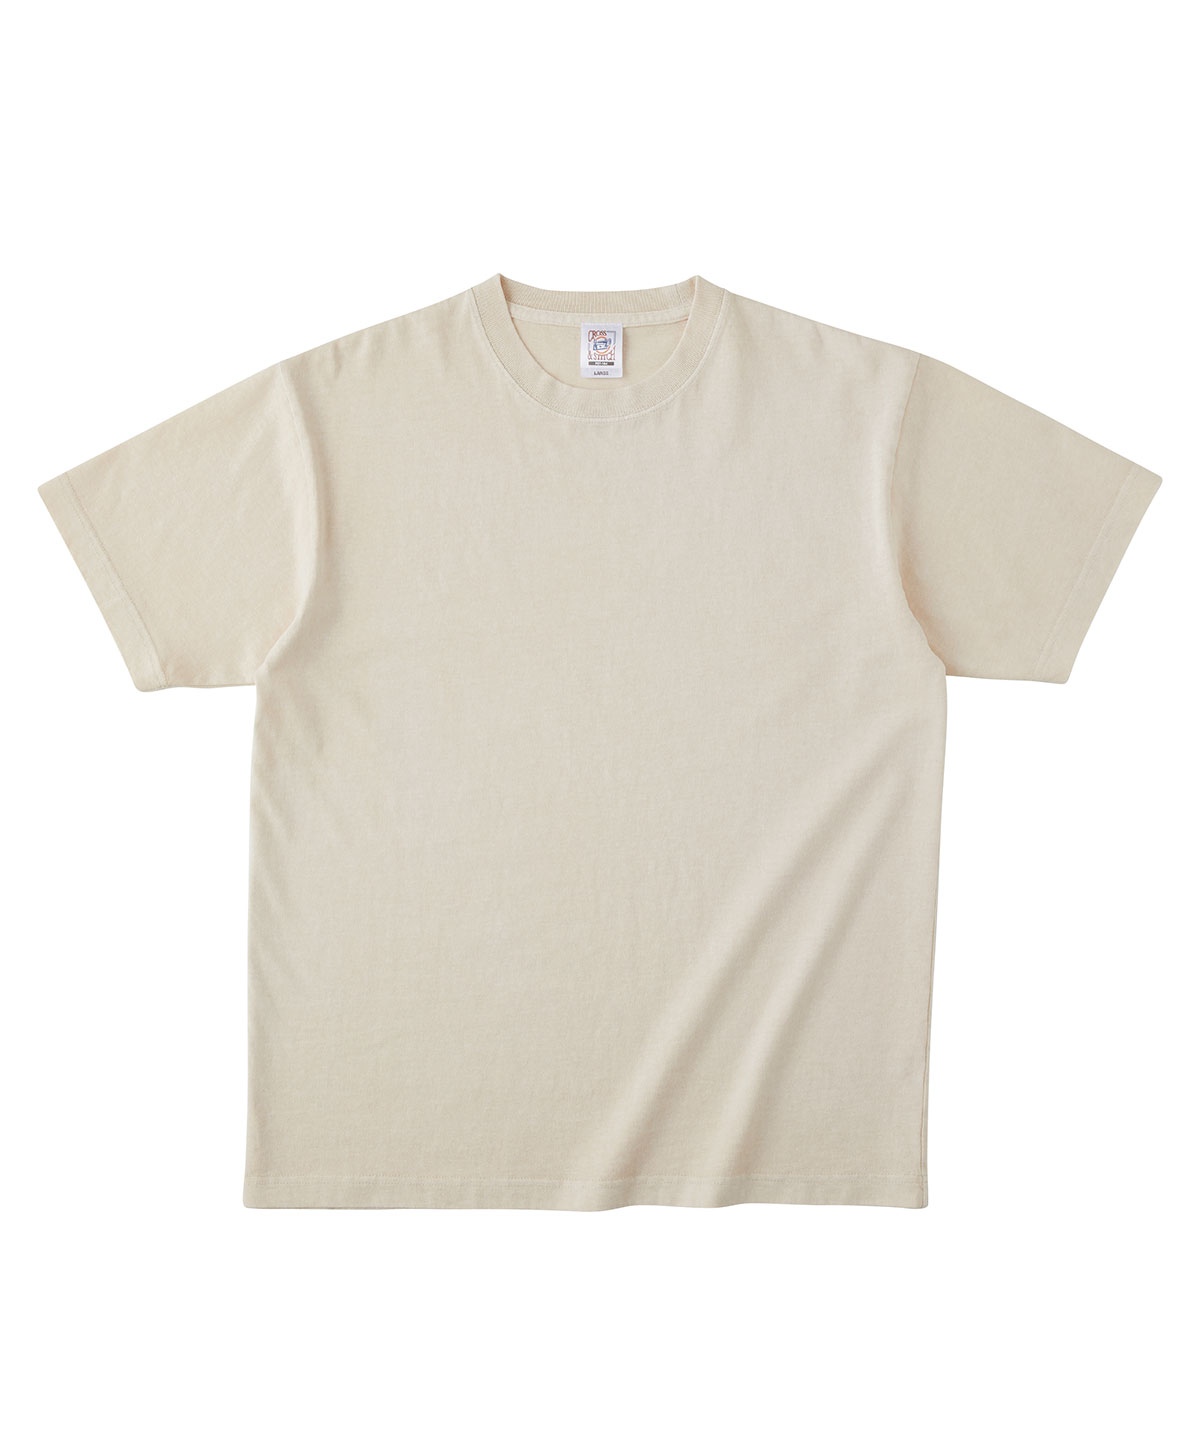 PGT-144 ピグメントＴシャツ | 福岡 オリジナルTシャツプリント制作, 刺繍ワッペン,アパレルデザイン,無地Tシャツショップのアートシャツ ファクトリー